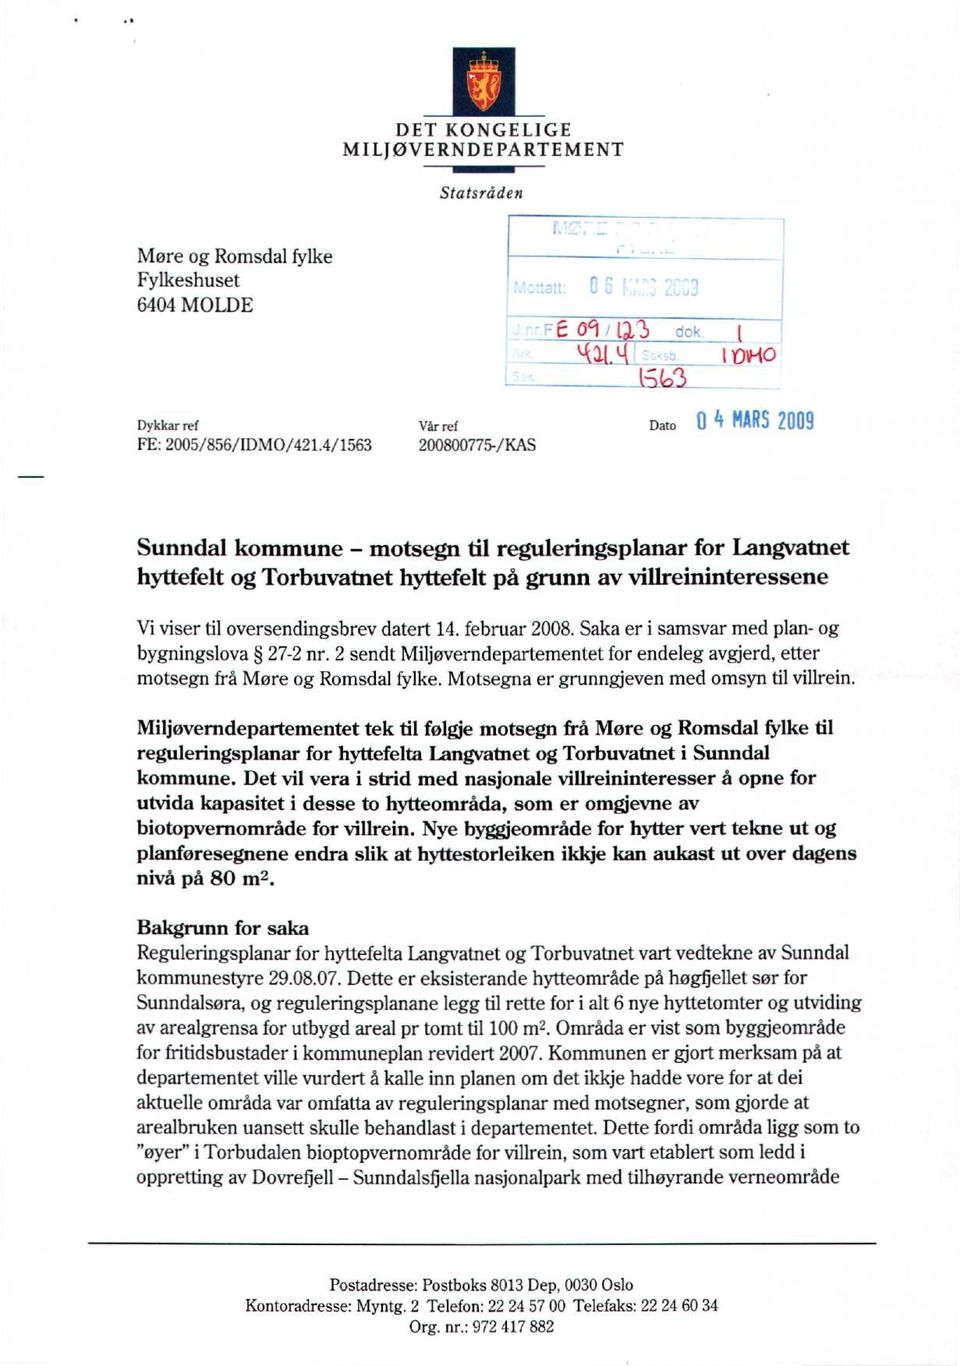 februar 2008. Saka er i samsvar med plan- og bygningslova 27-2 nr. 2 sendt Miljøverndepartementet for endeleg avgjerd, etter motsegn frå Møre og Romsdal fylke.